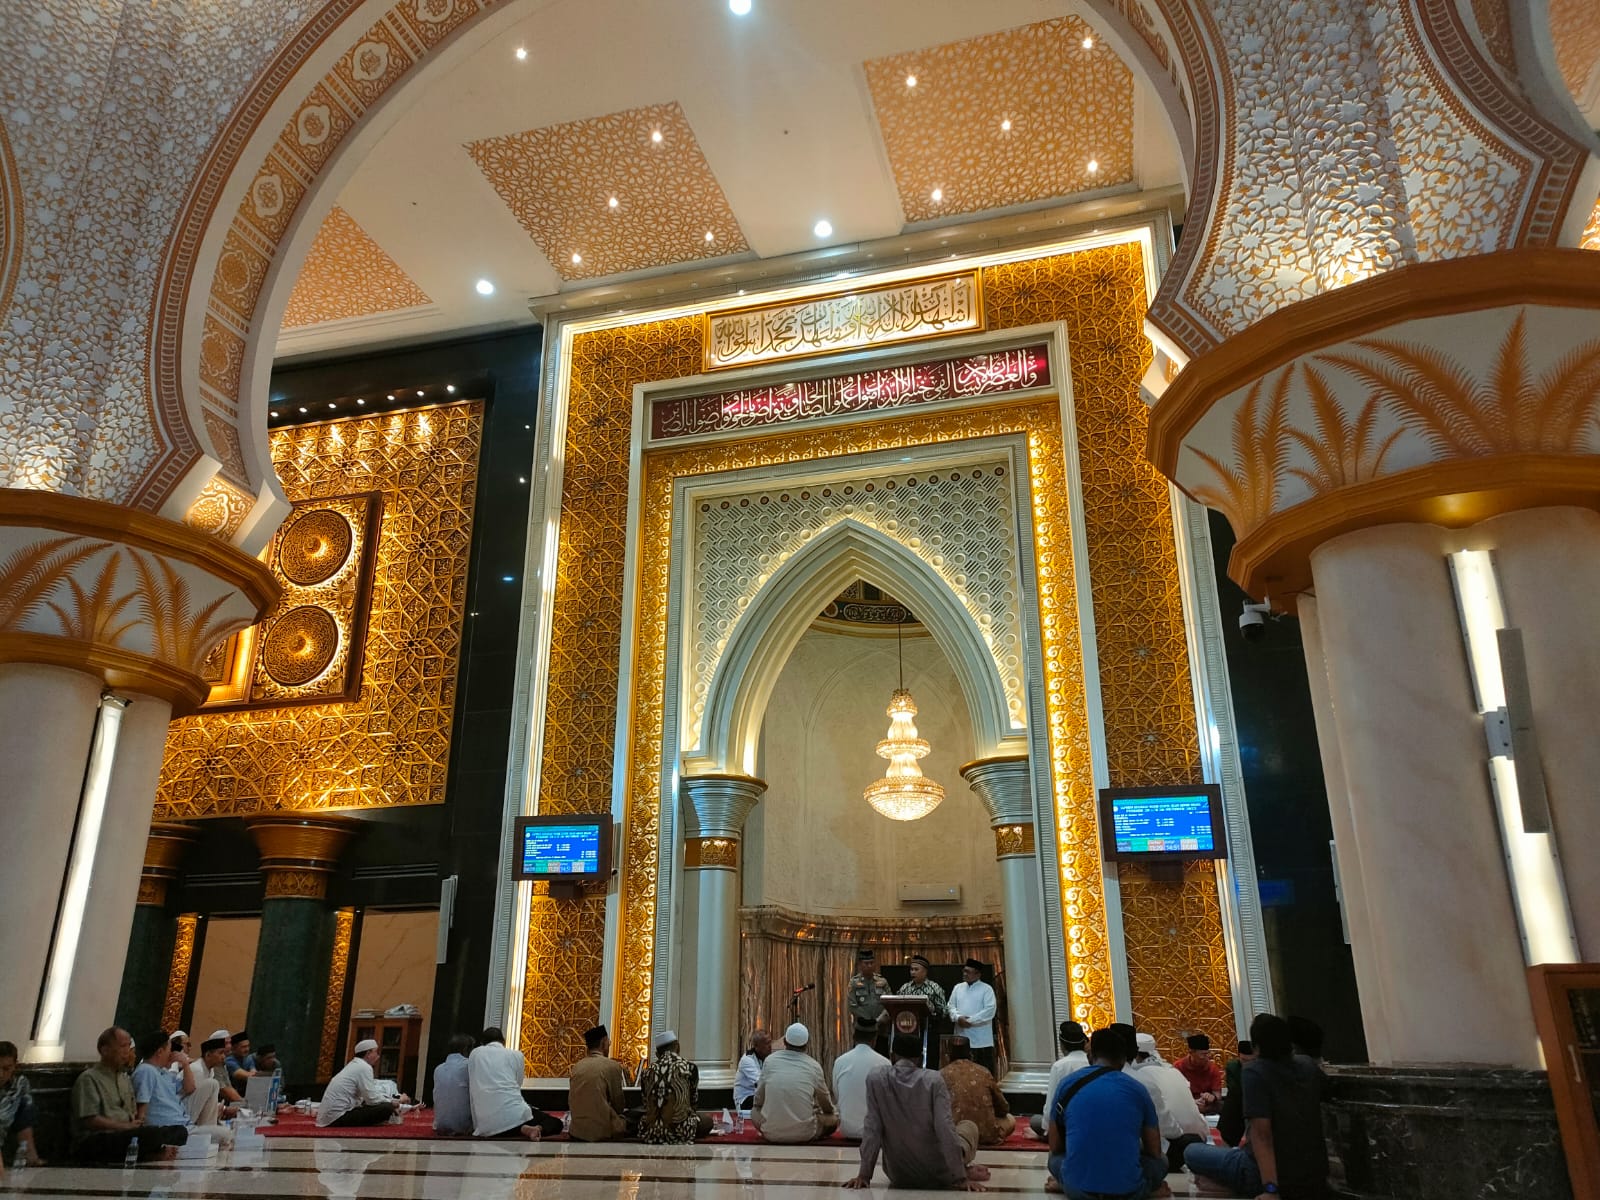 Dibalik Kemegahan Masjid Izzatul Islam Grand Wisata, Terdapat Harmonisasi NU-Muhammidayah